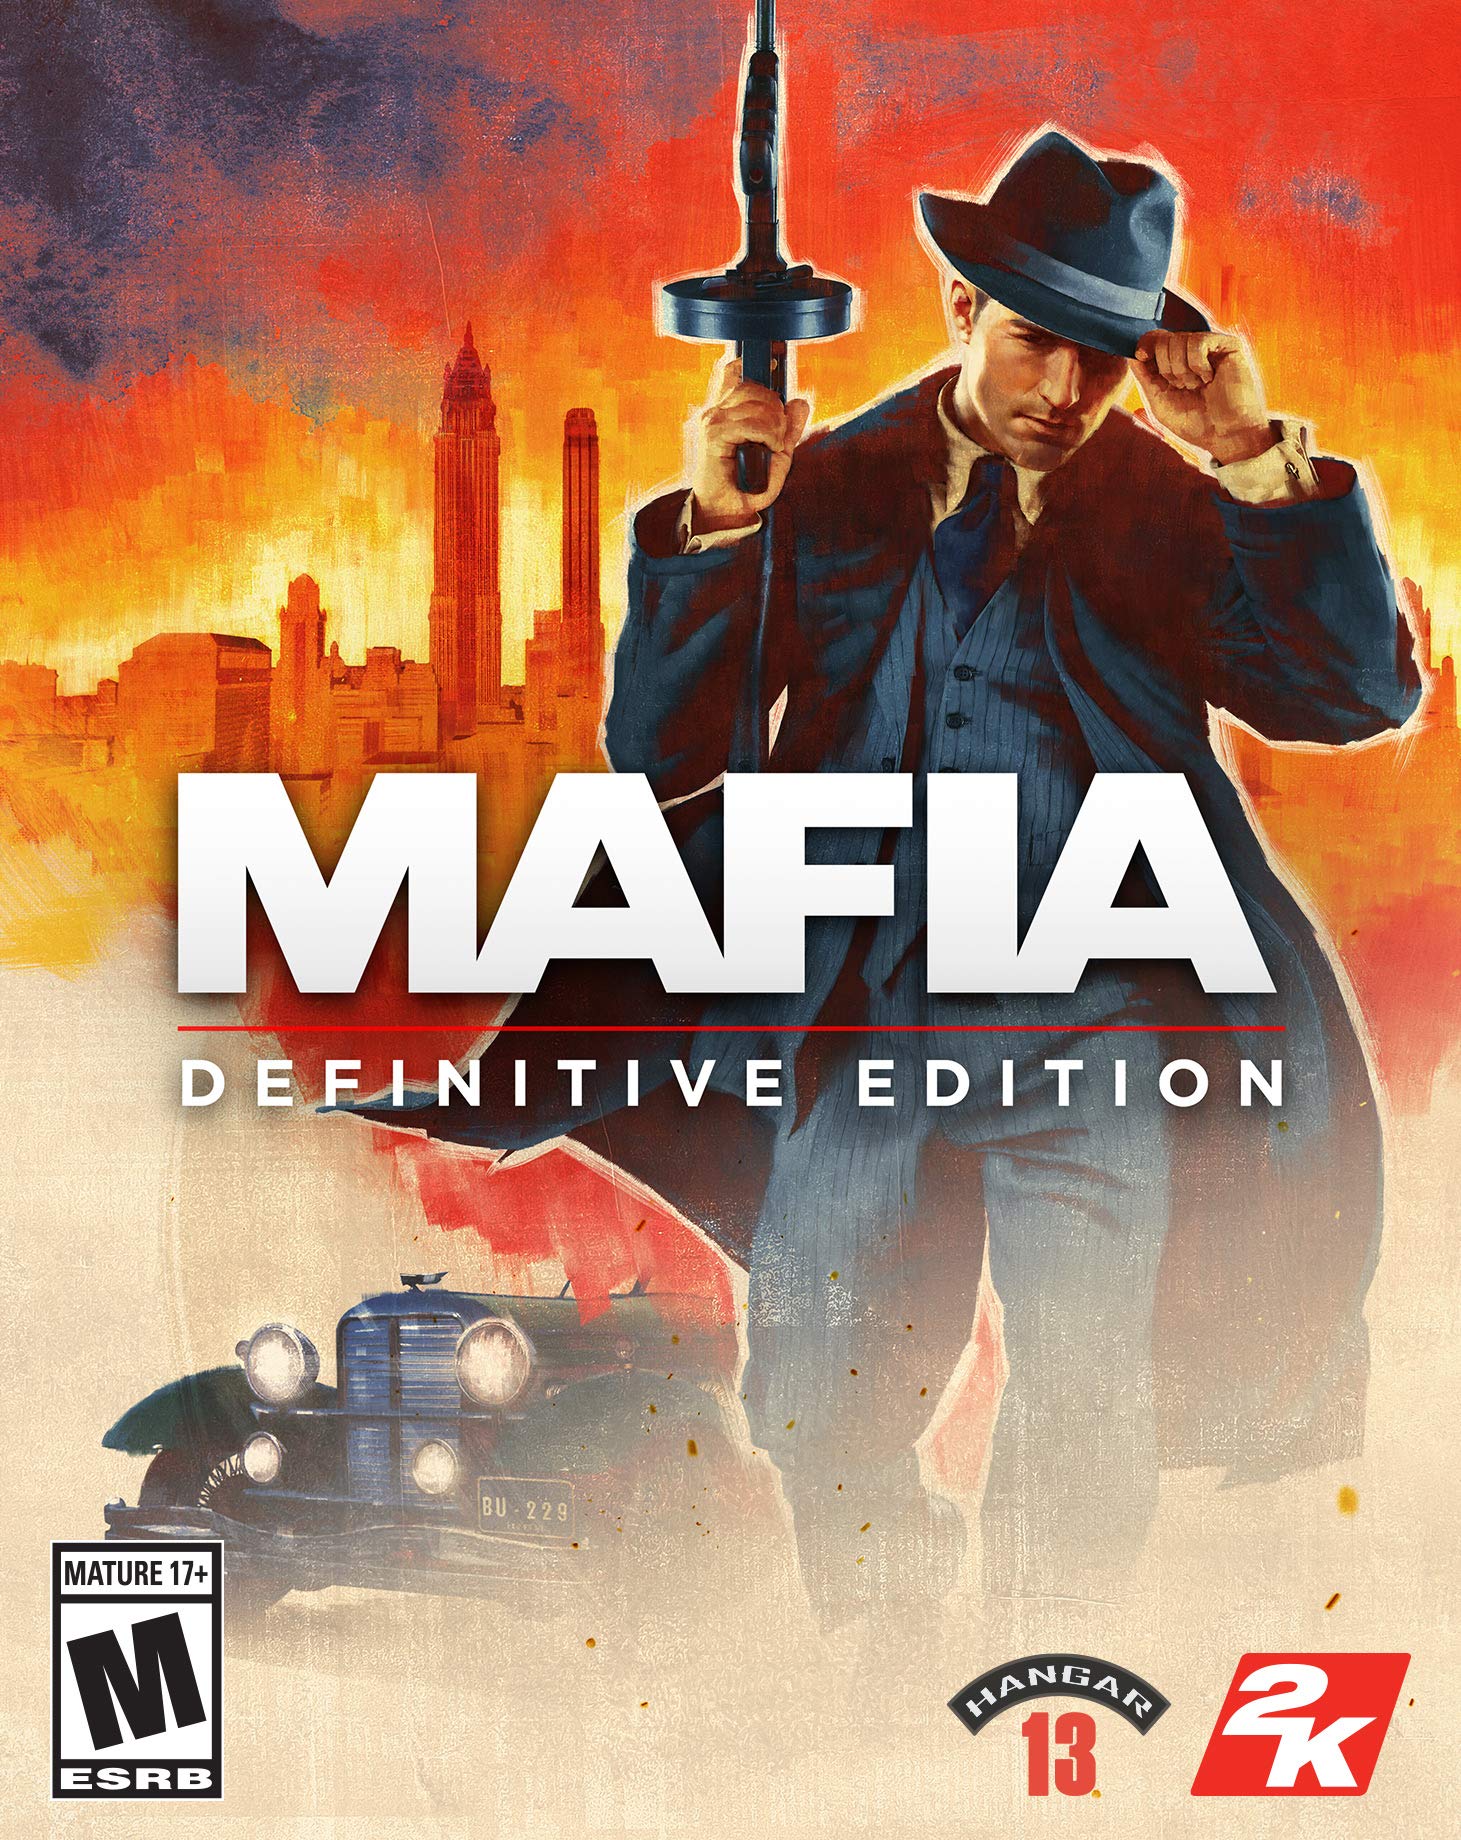 Mafia: Definitive Edition - Steam PC [Online Game Code]